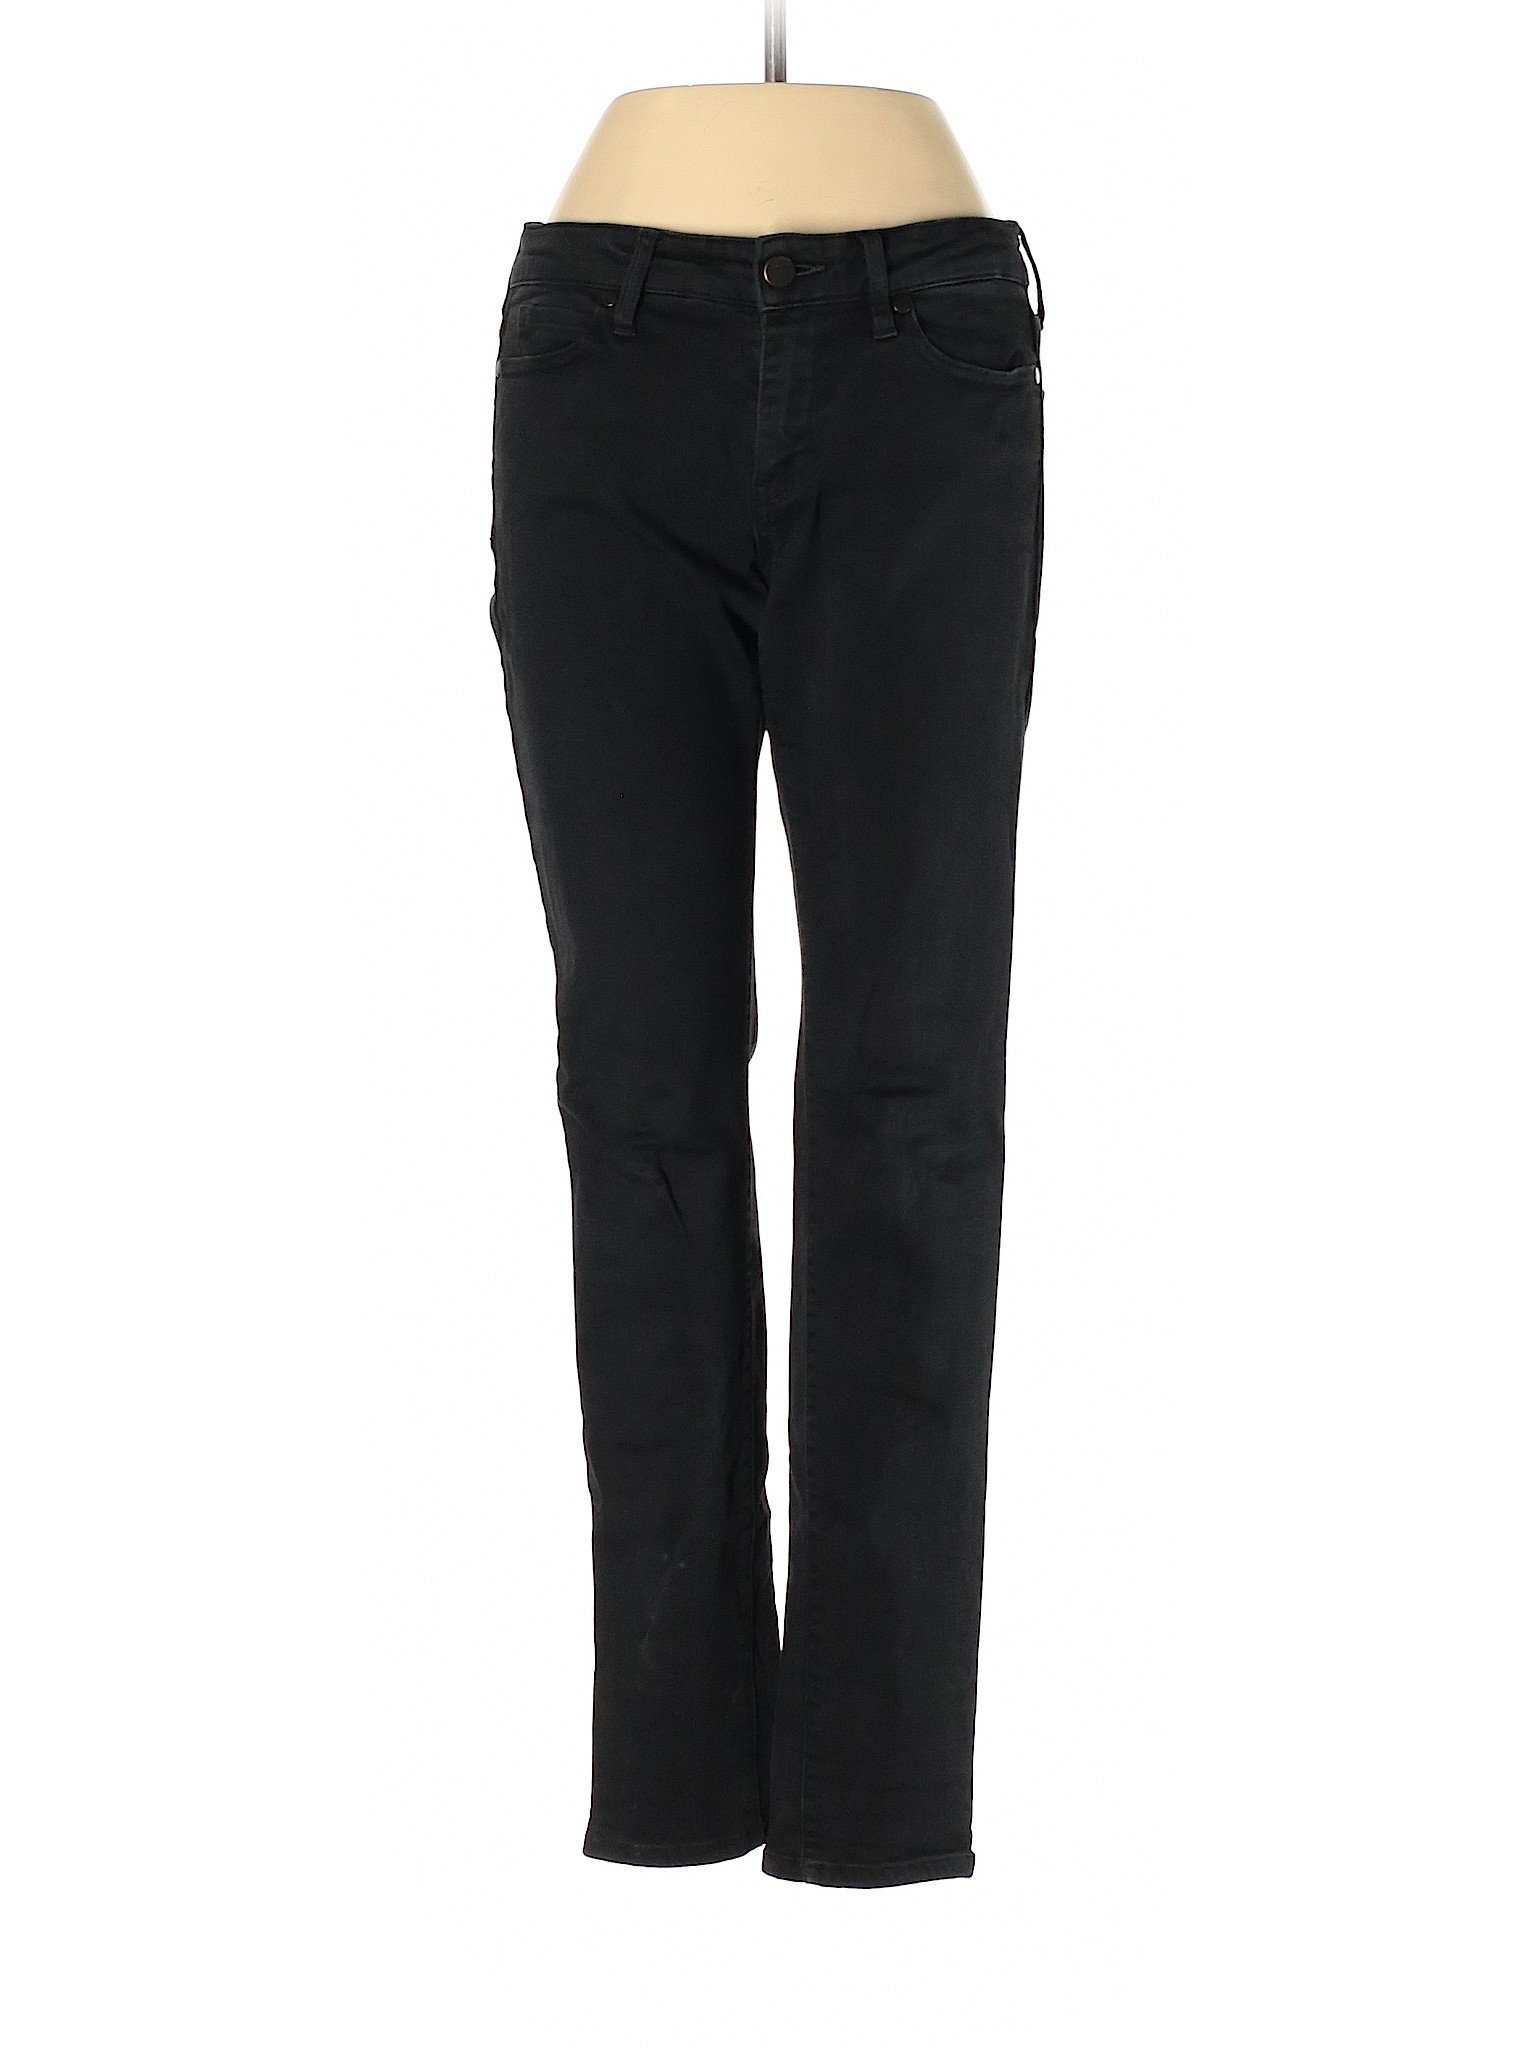 Uniqlo Women Black Jeans 26W | eBay